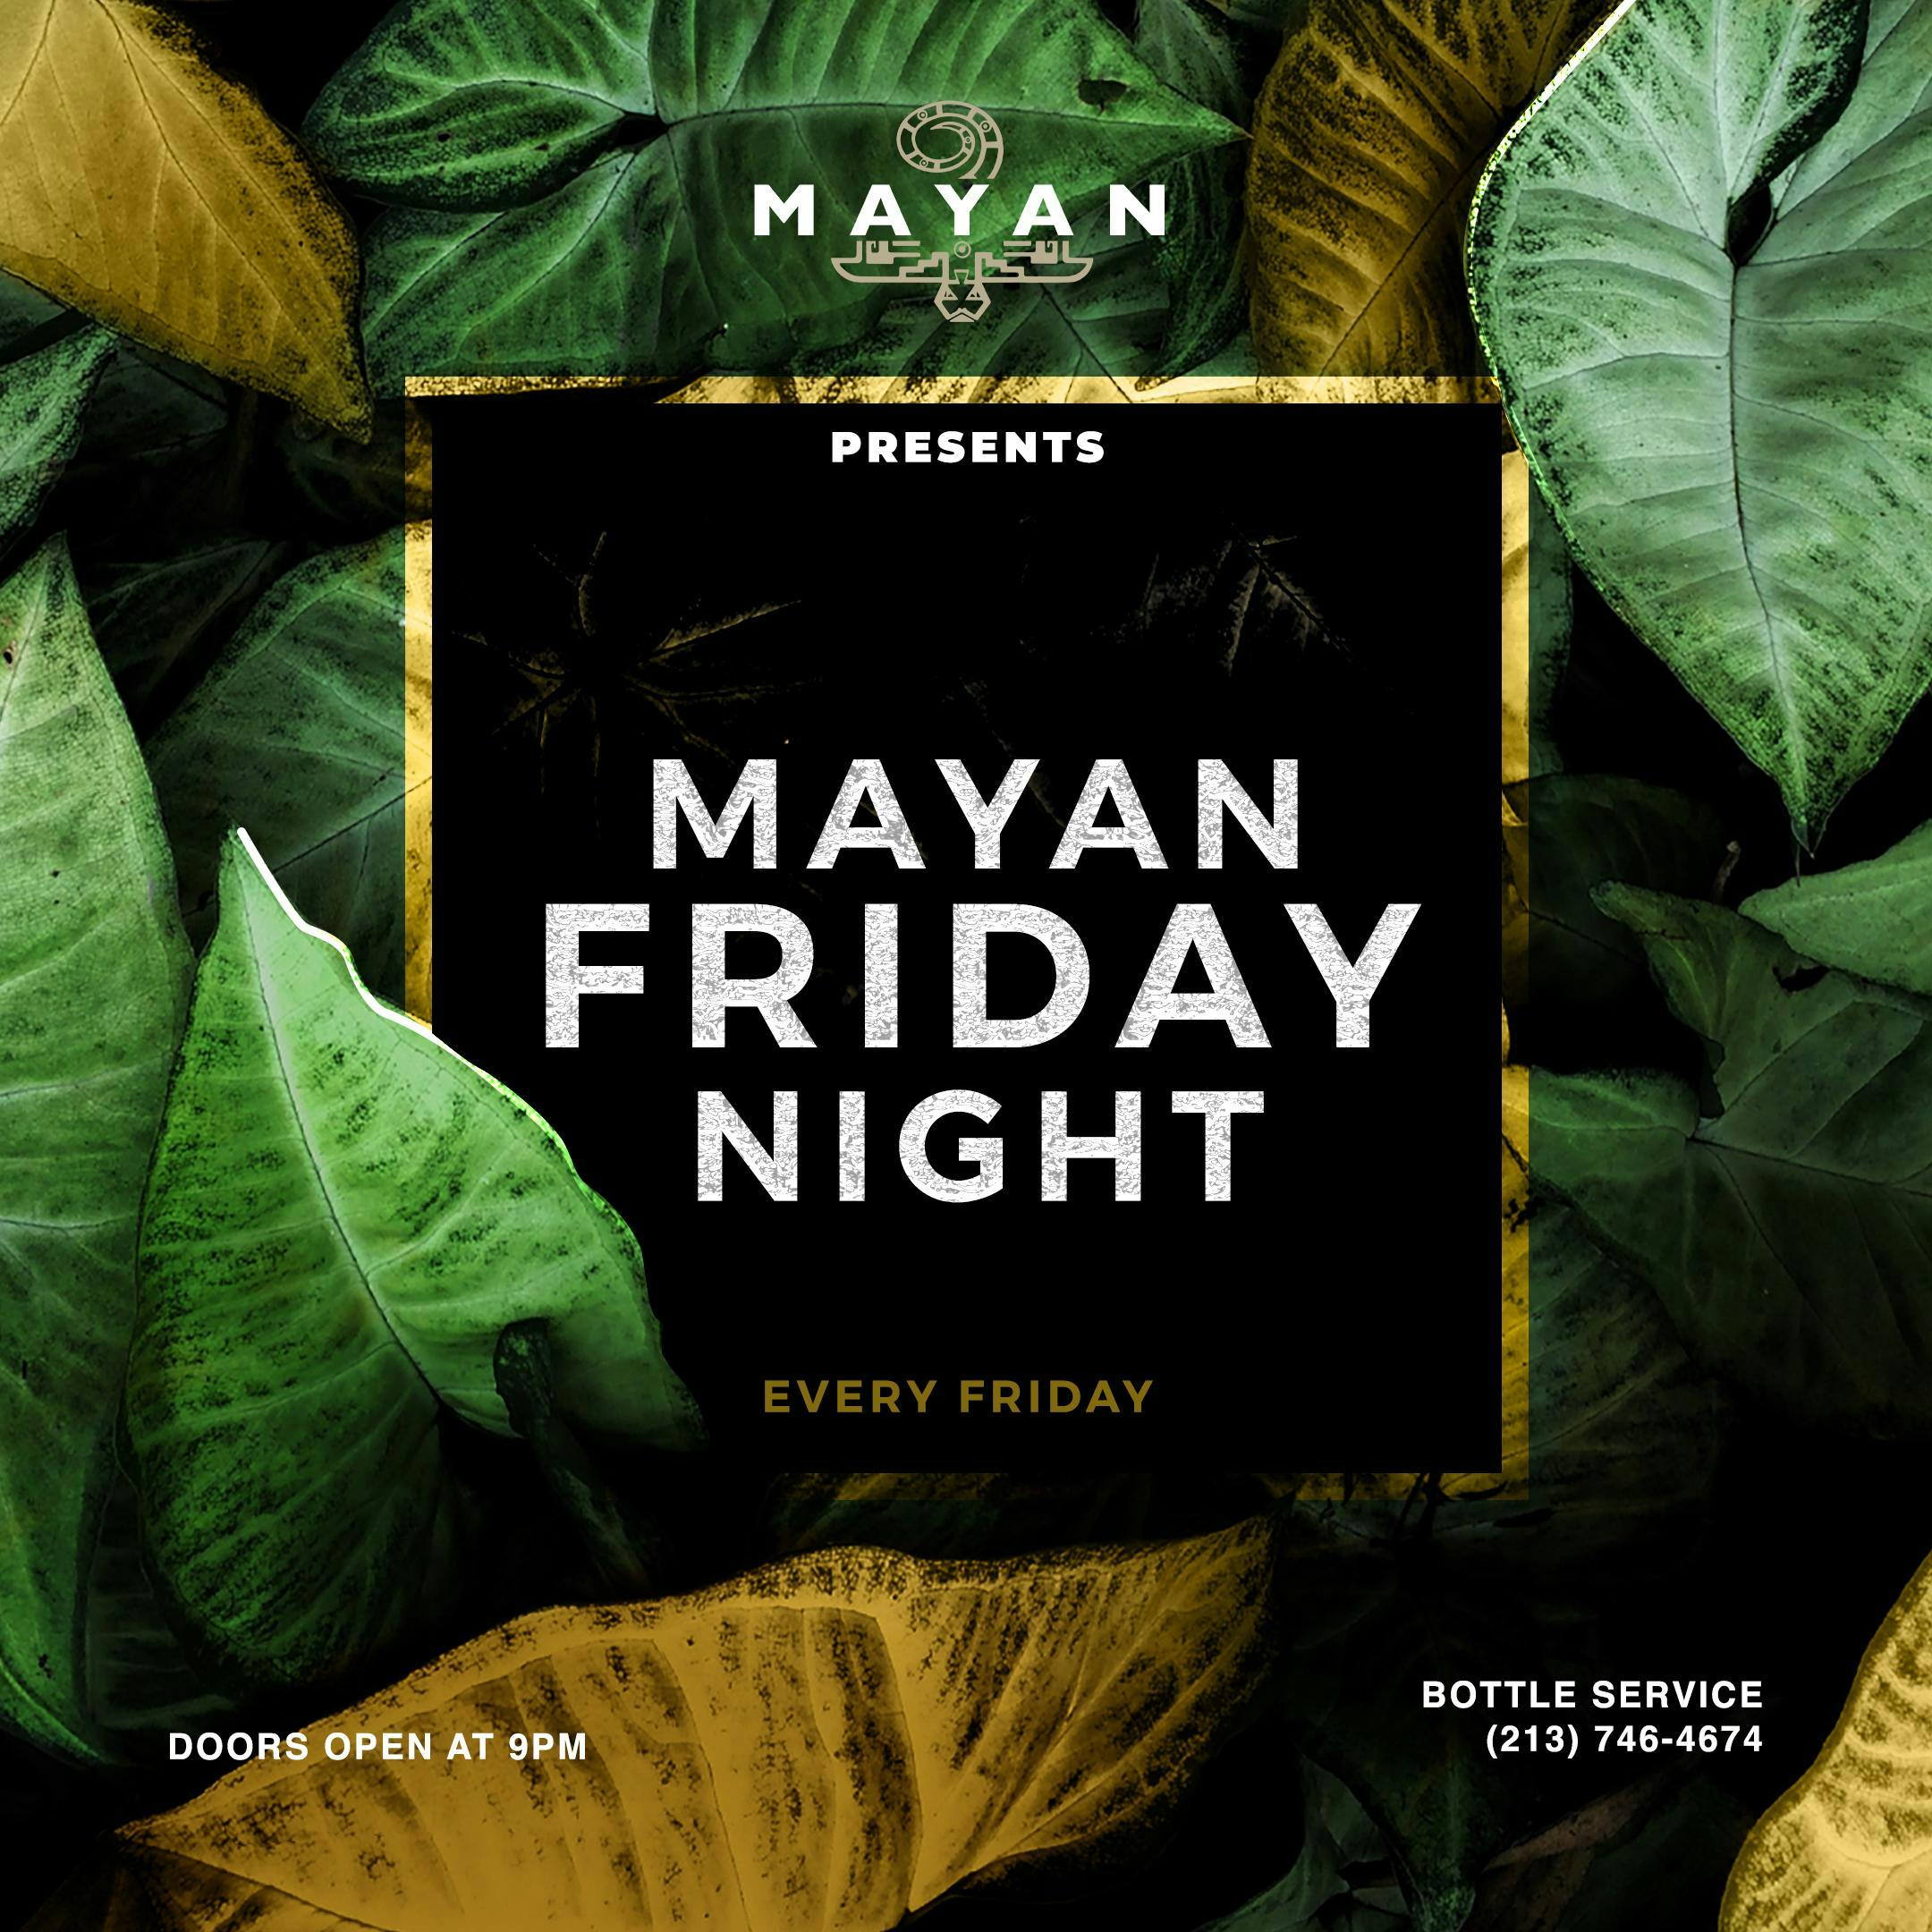 Mayan Fridays - Nightclub in DTLA